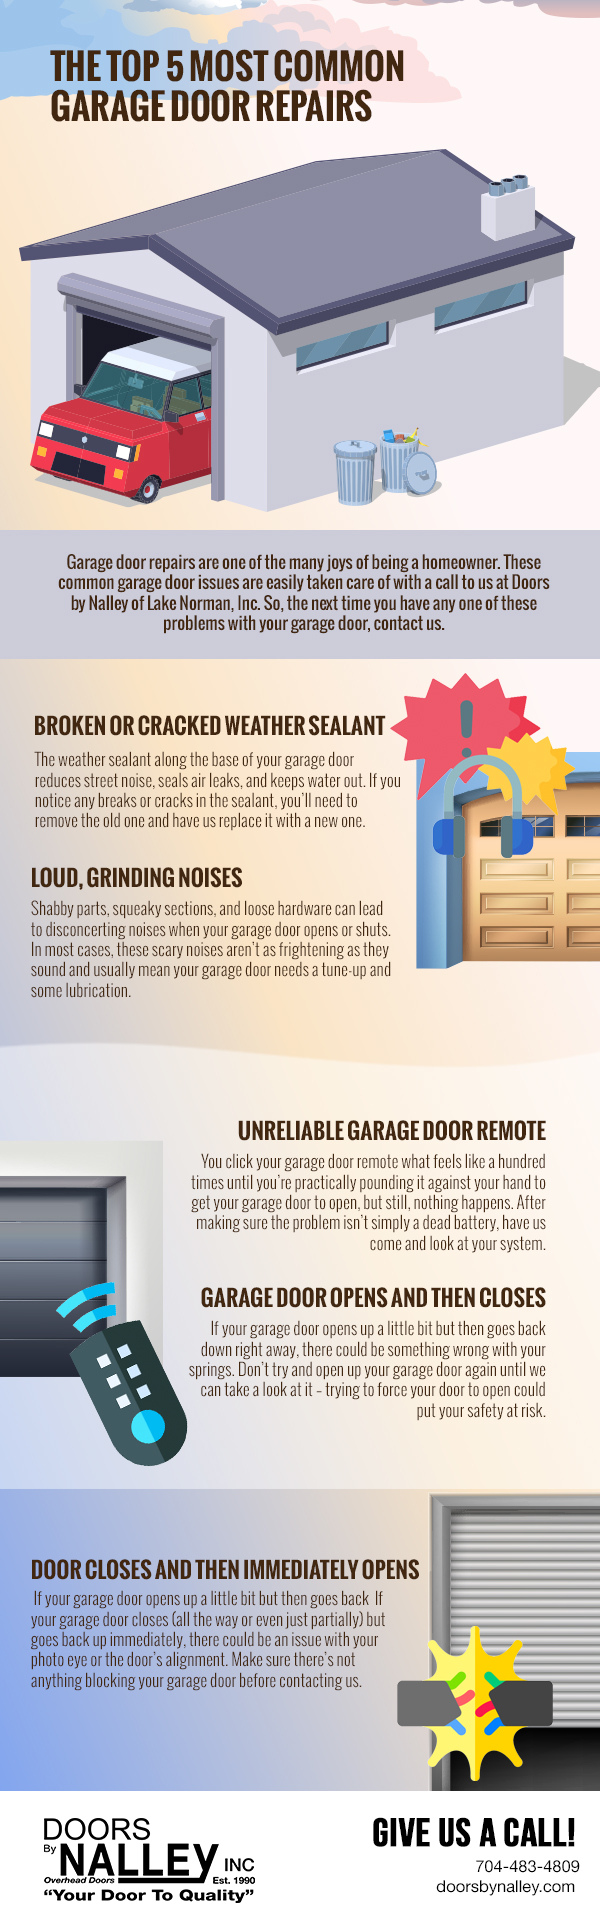 The Top 5 Most Common Garage Door Repairs